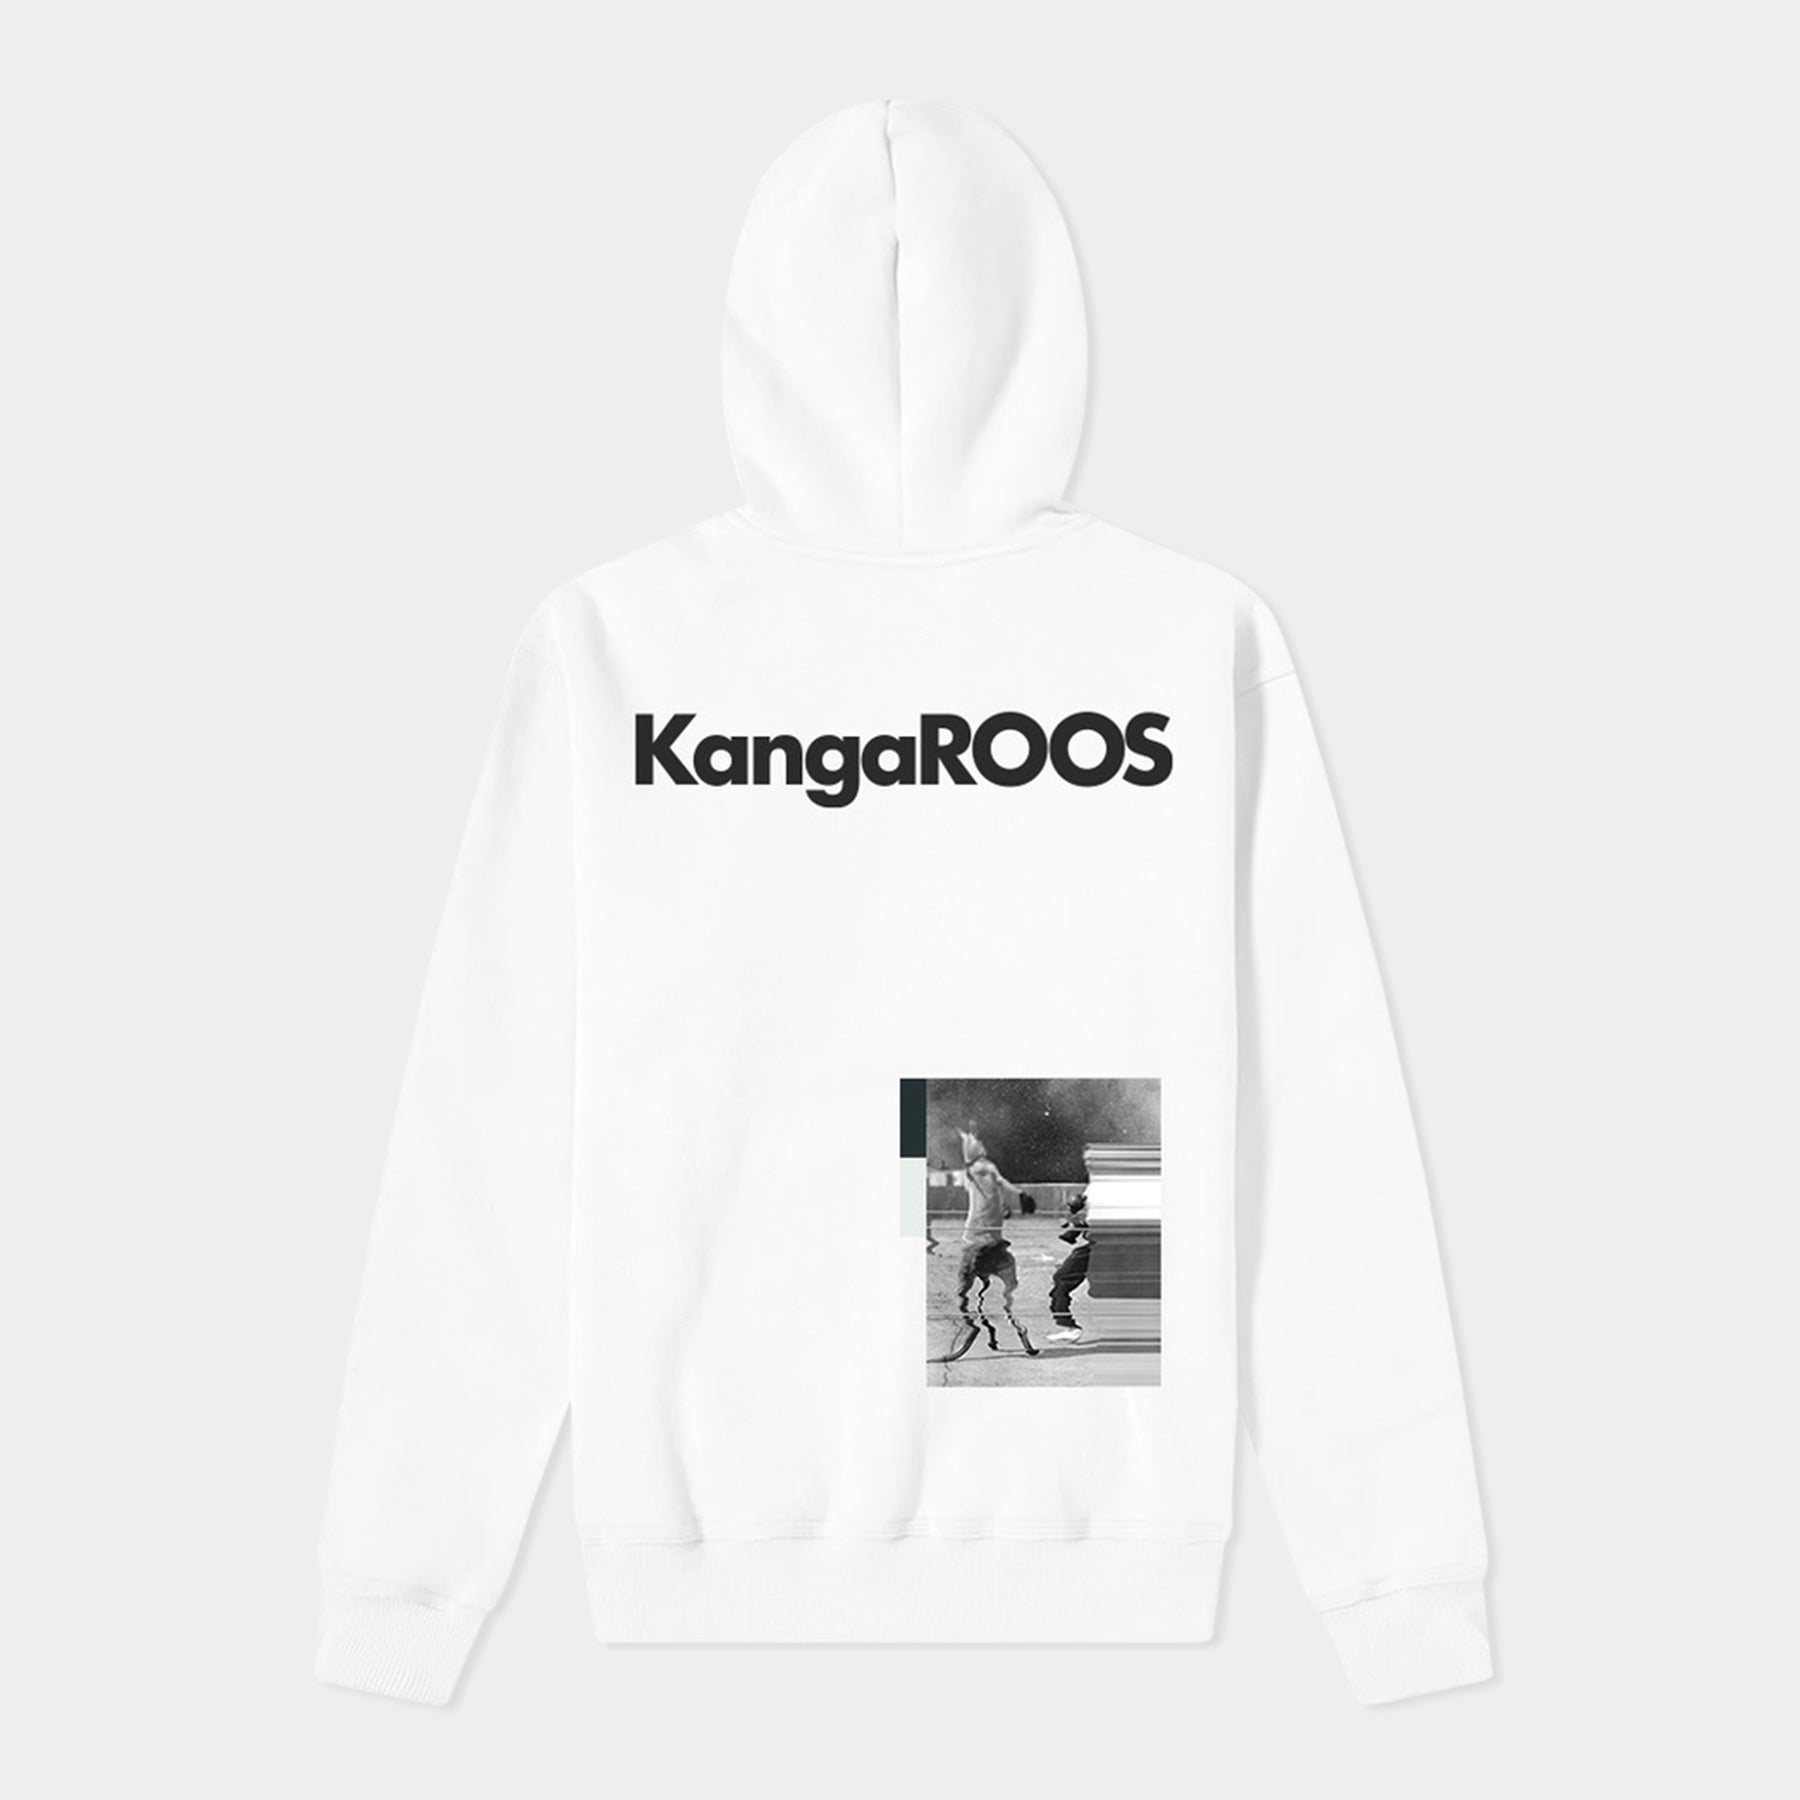 KangaROOS Clothing